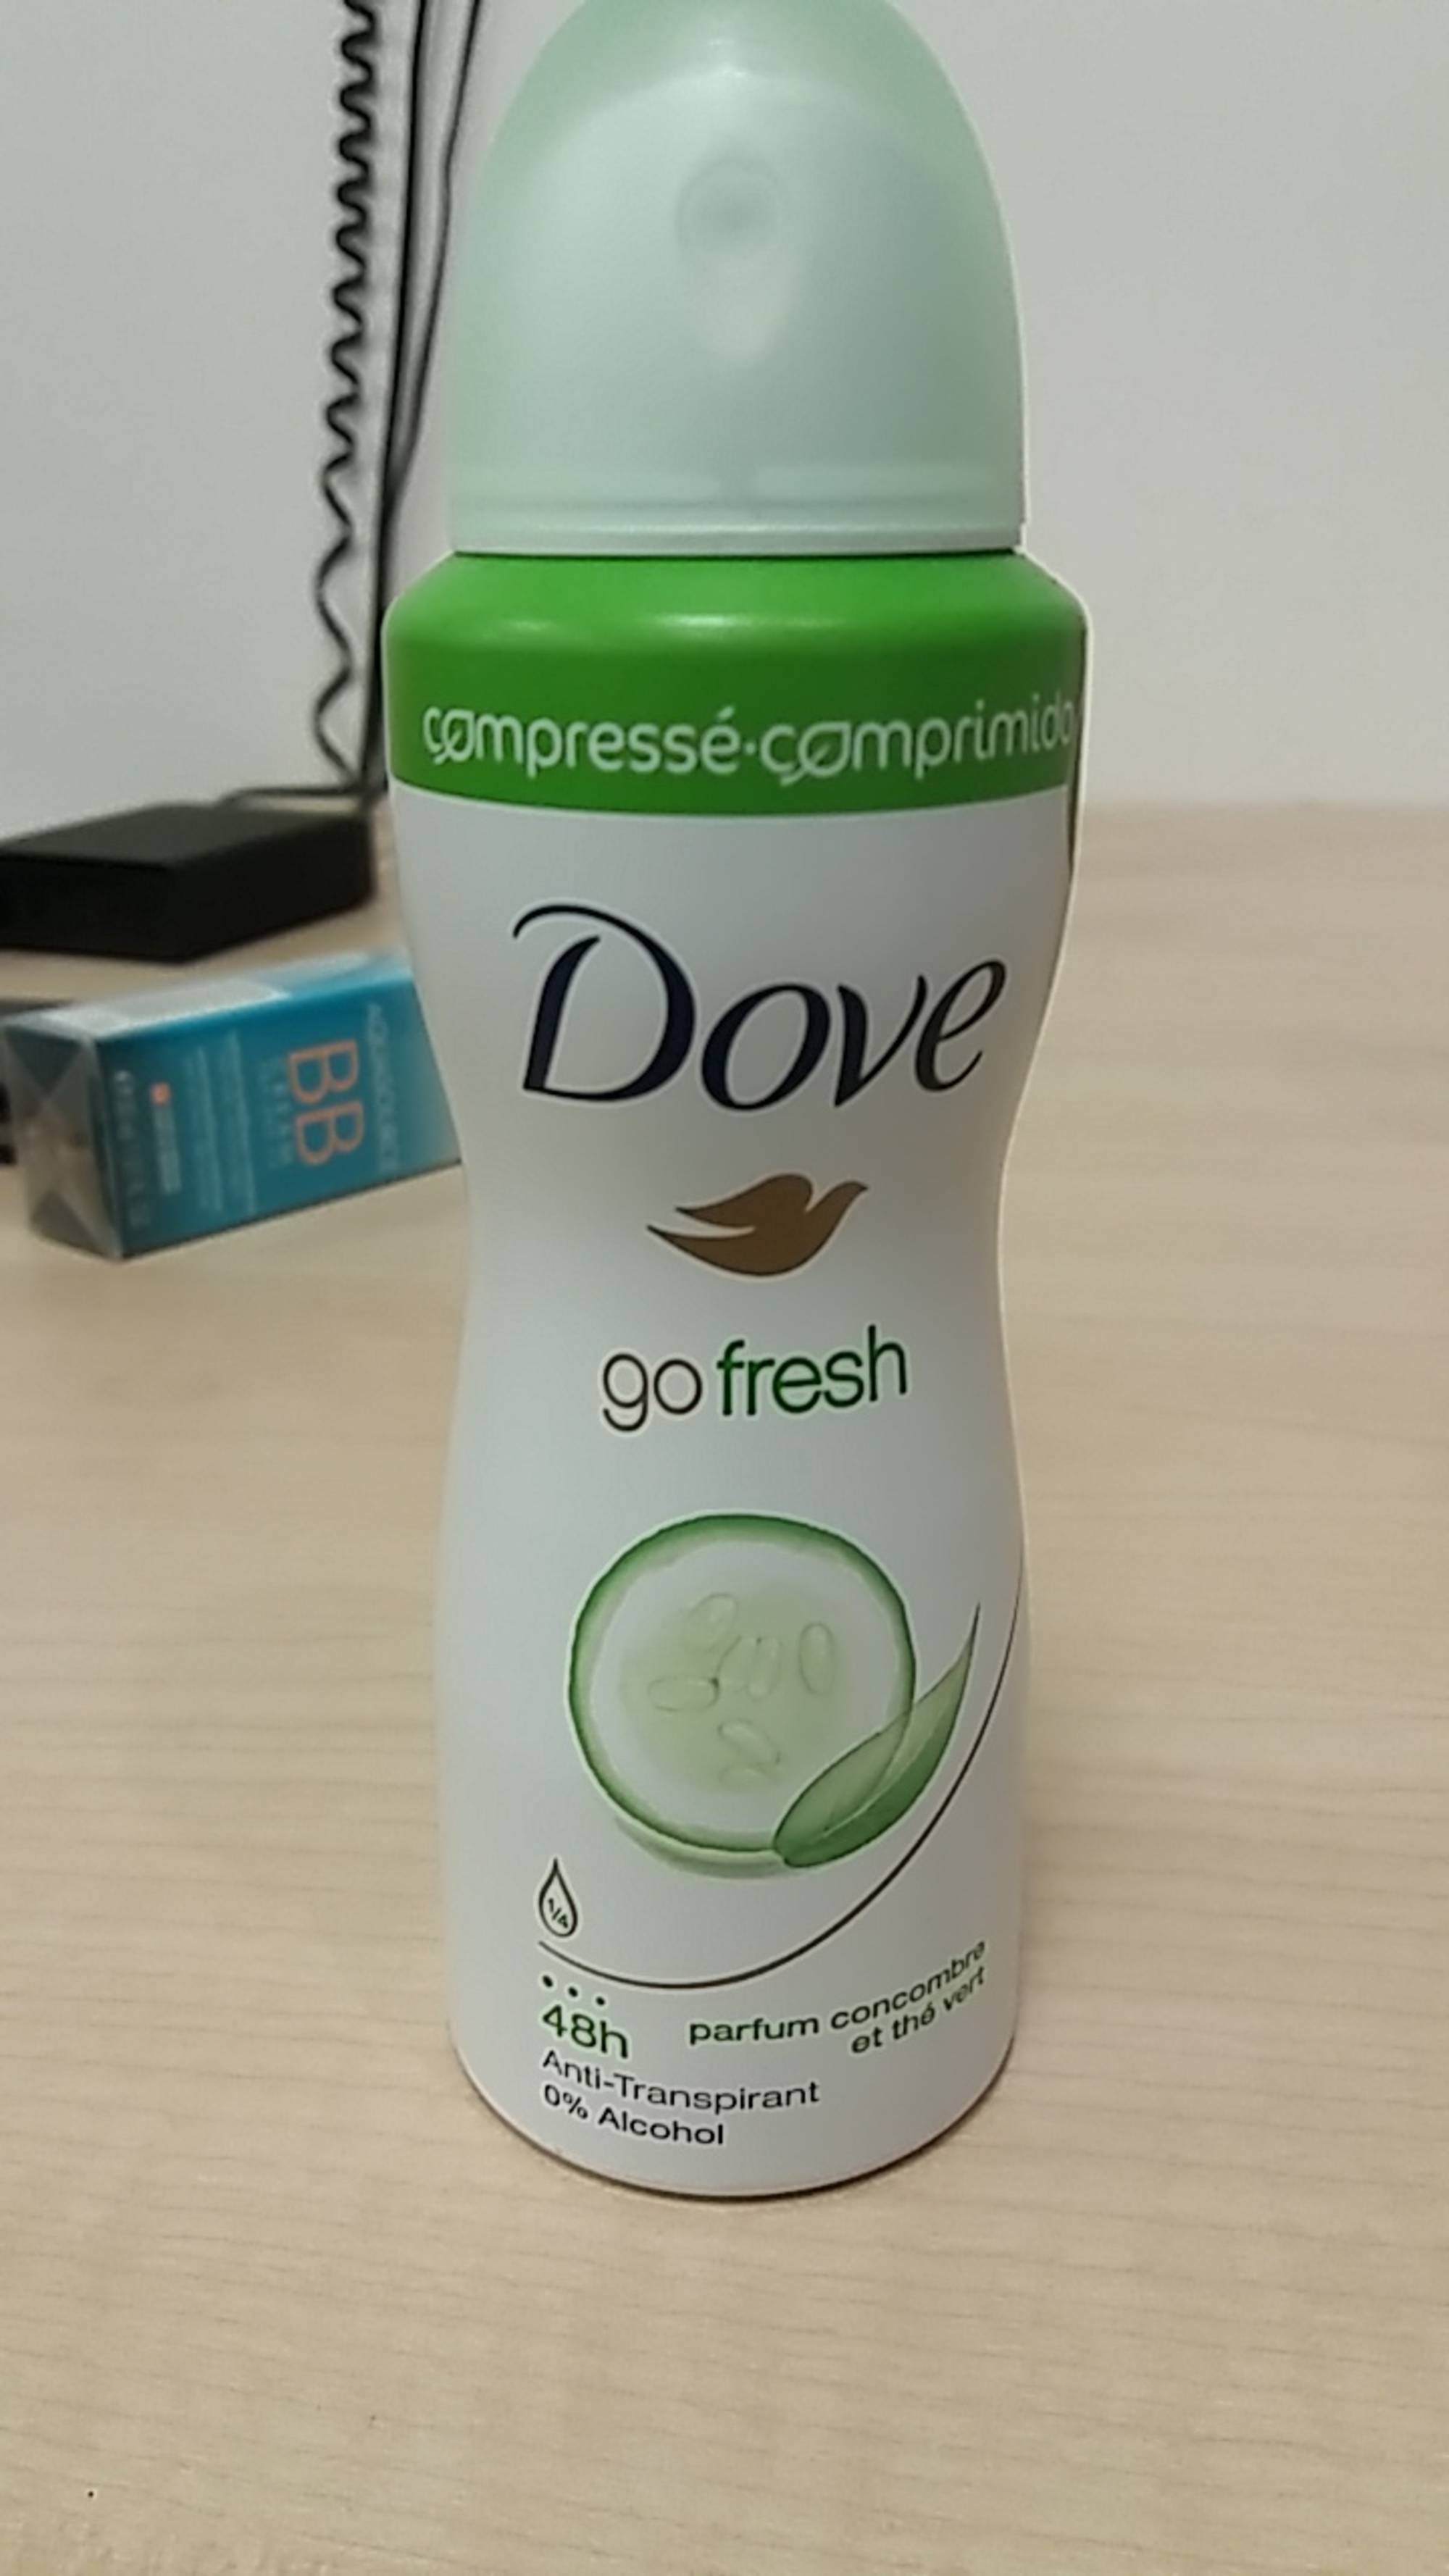 DOVE - Go fresh - Déodorant parfum concombre et thé vert compressé 48h